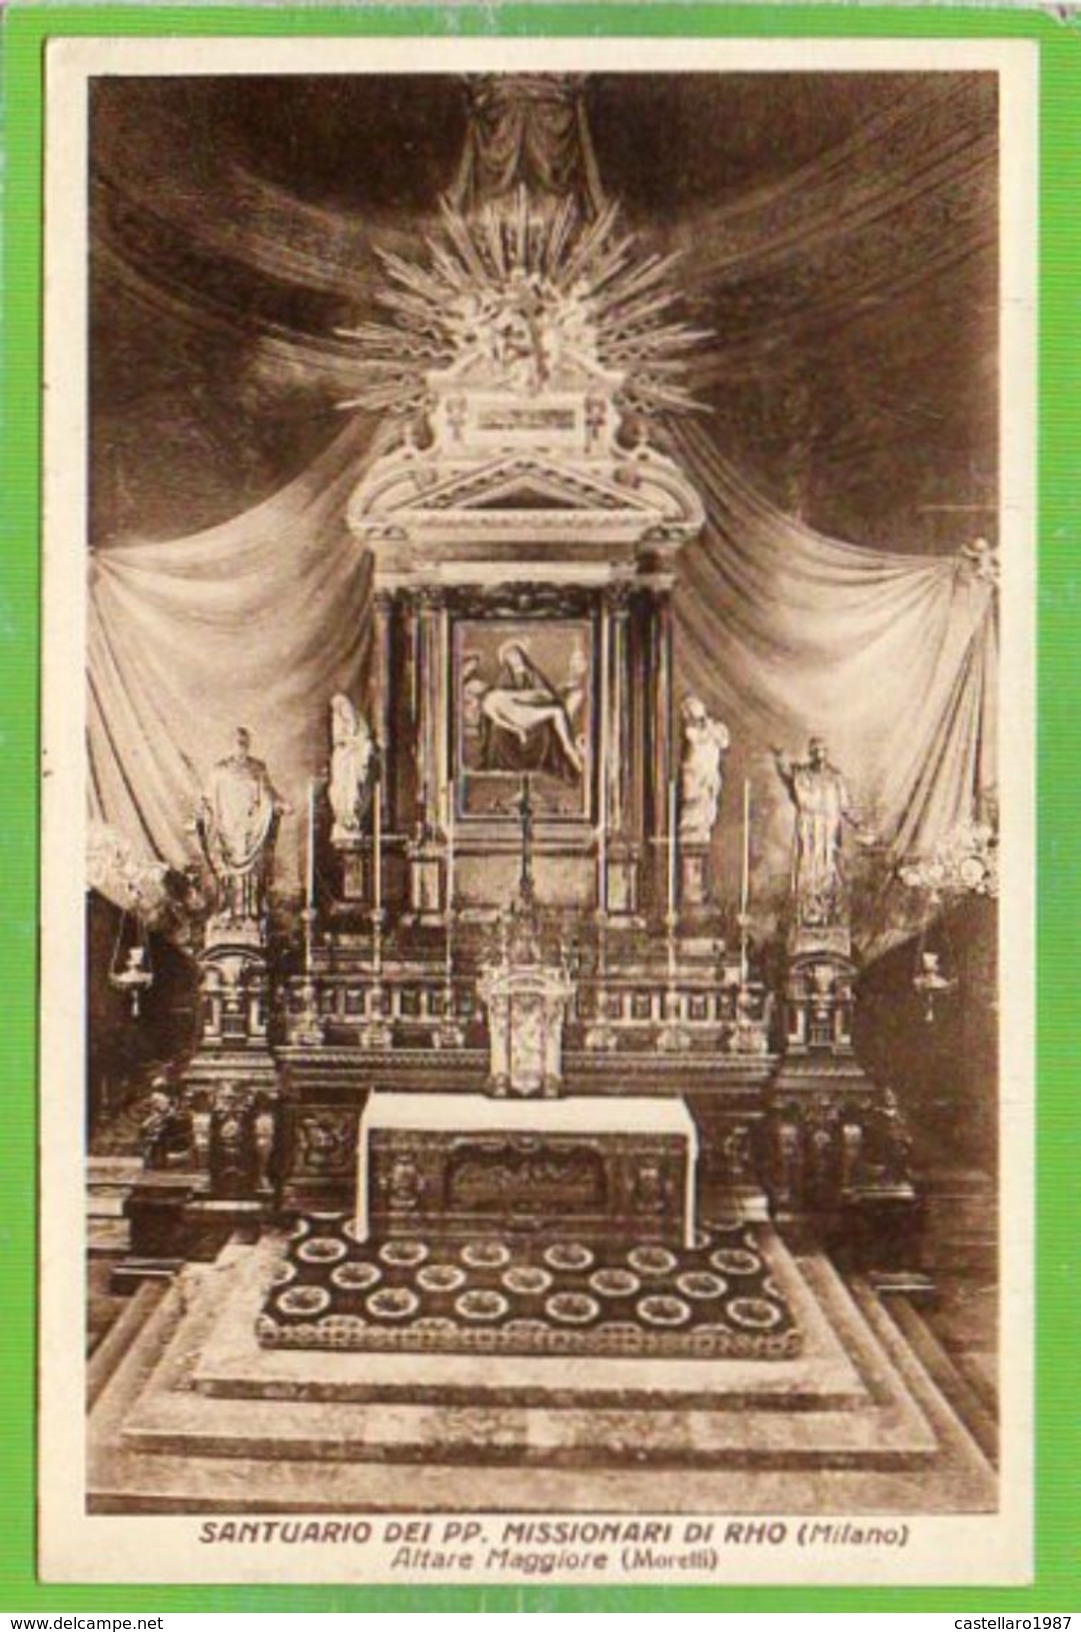 SANTUARIO DEI PP. MISSIONARI DI RHO (Milano) - Altare Maggiore (Morelli) - Formato Piccolo - Rho